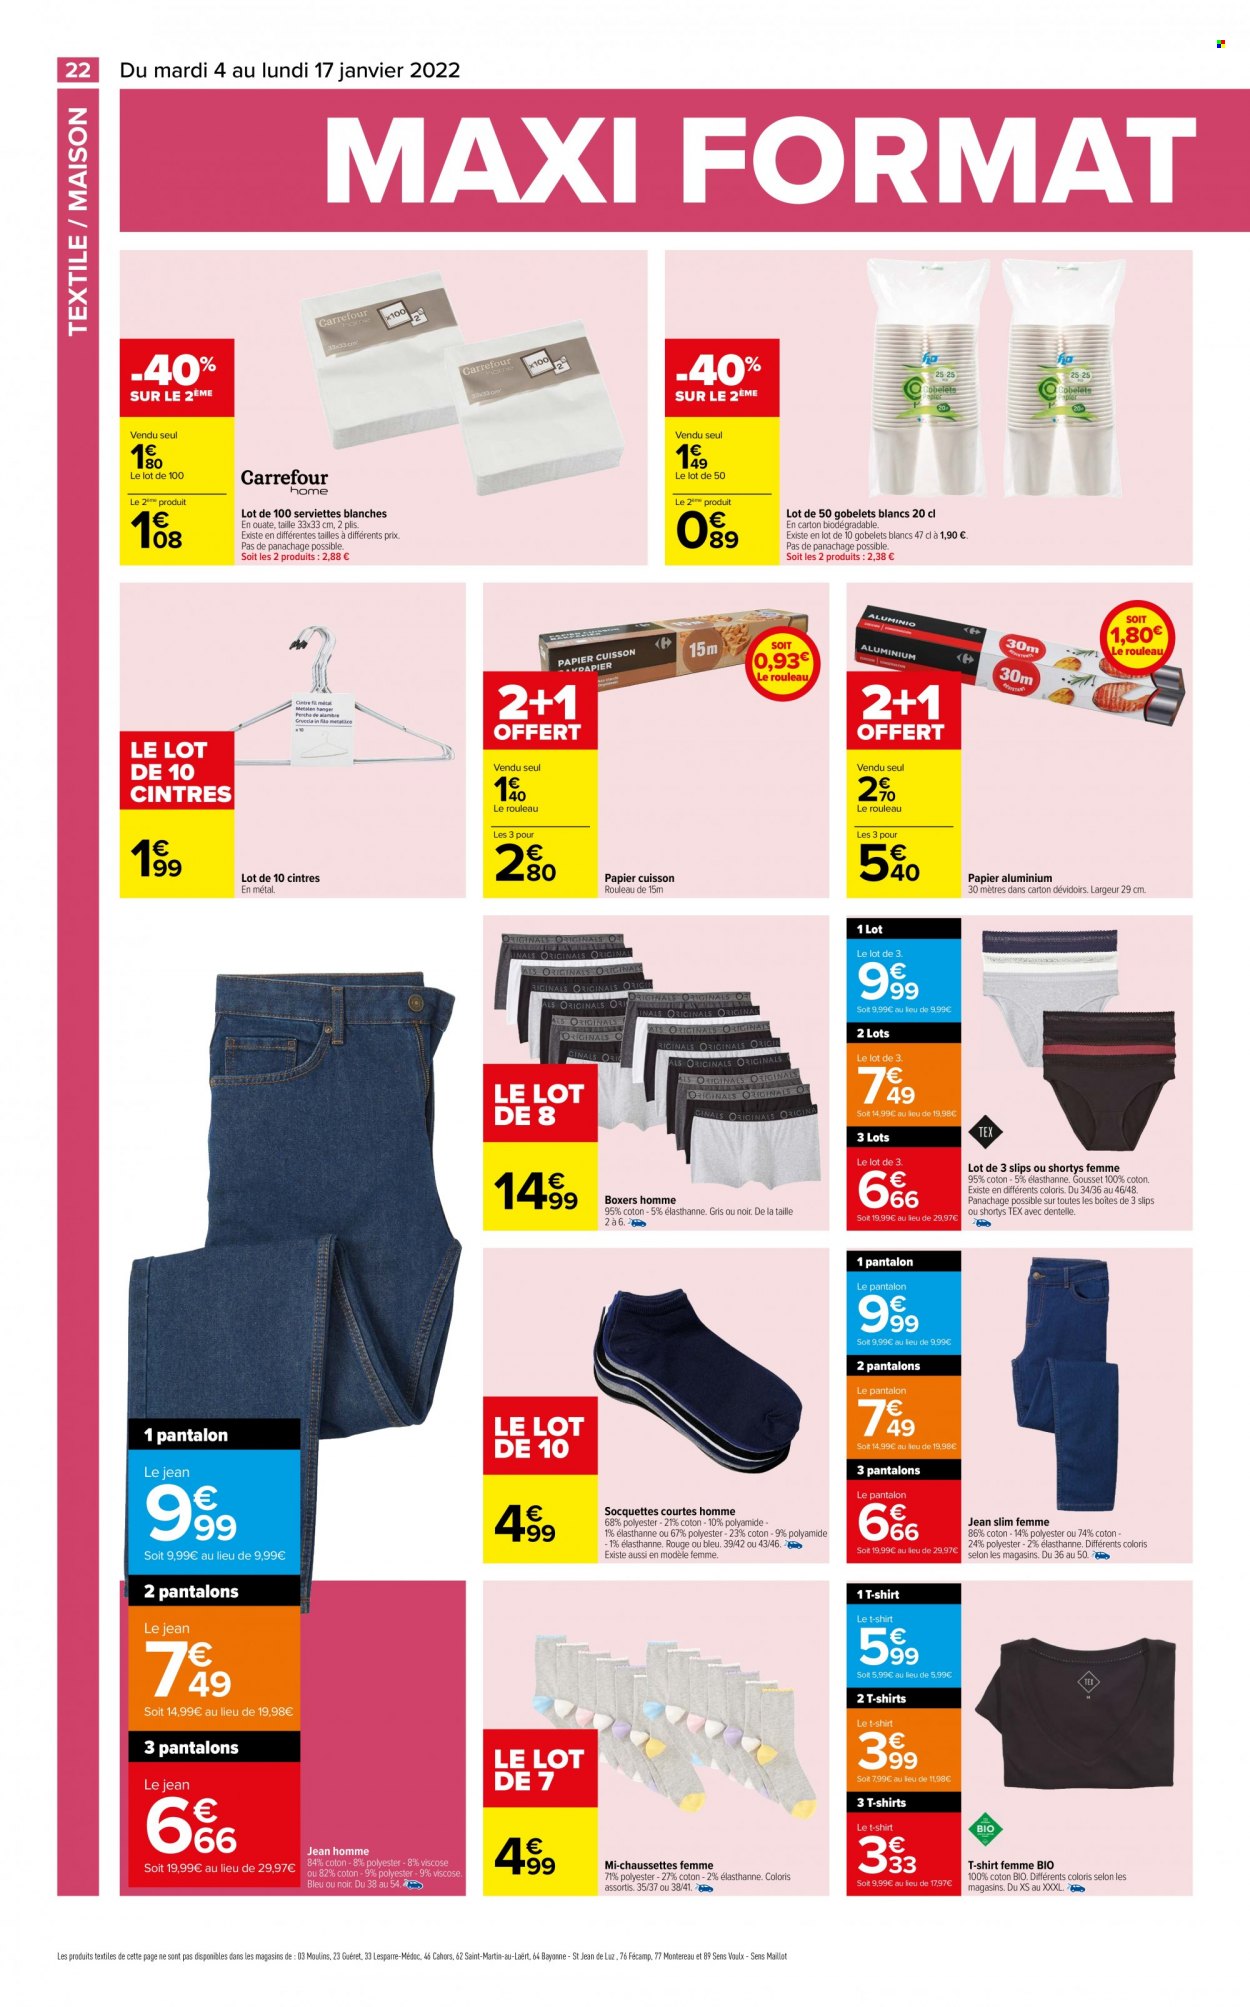 thumbnail - Catalogue Carrefour Hypermarchés - 04/01/2022 - 17/01/2022 - Produits soldés - serviette, cintre, papier cuisson, papier aluminium, pantalon, pantalon en denim, t-shirt, slip, boxers, chaussettes, maison. Page 22.